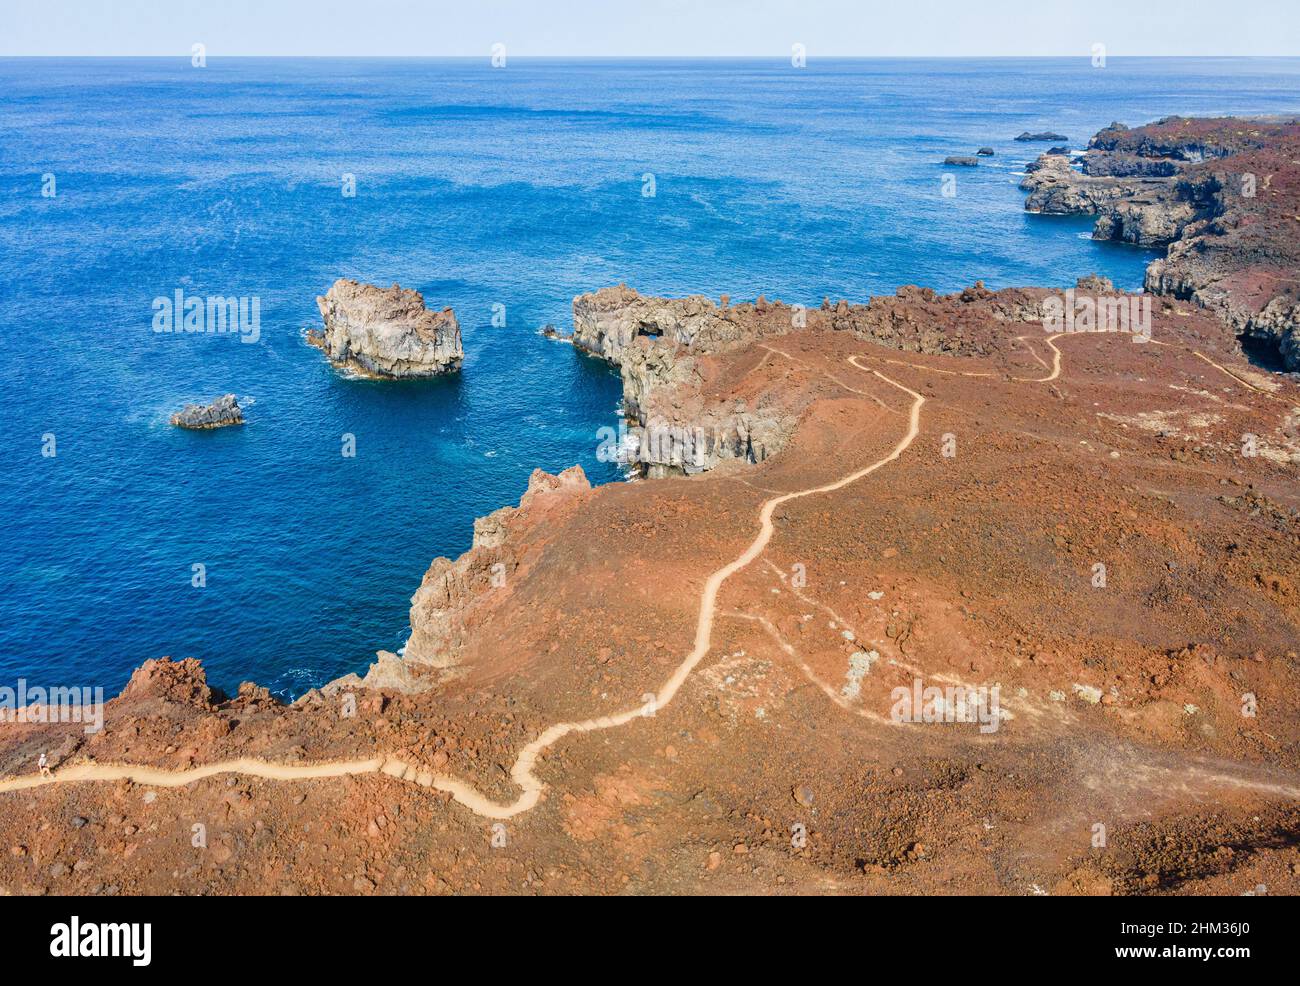 Vue aérienne du sentier de randonnée côtier près d'Arco de la Tosca - El Hierro (îles Canaries) Banque D'Images